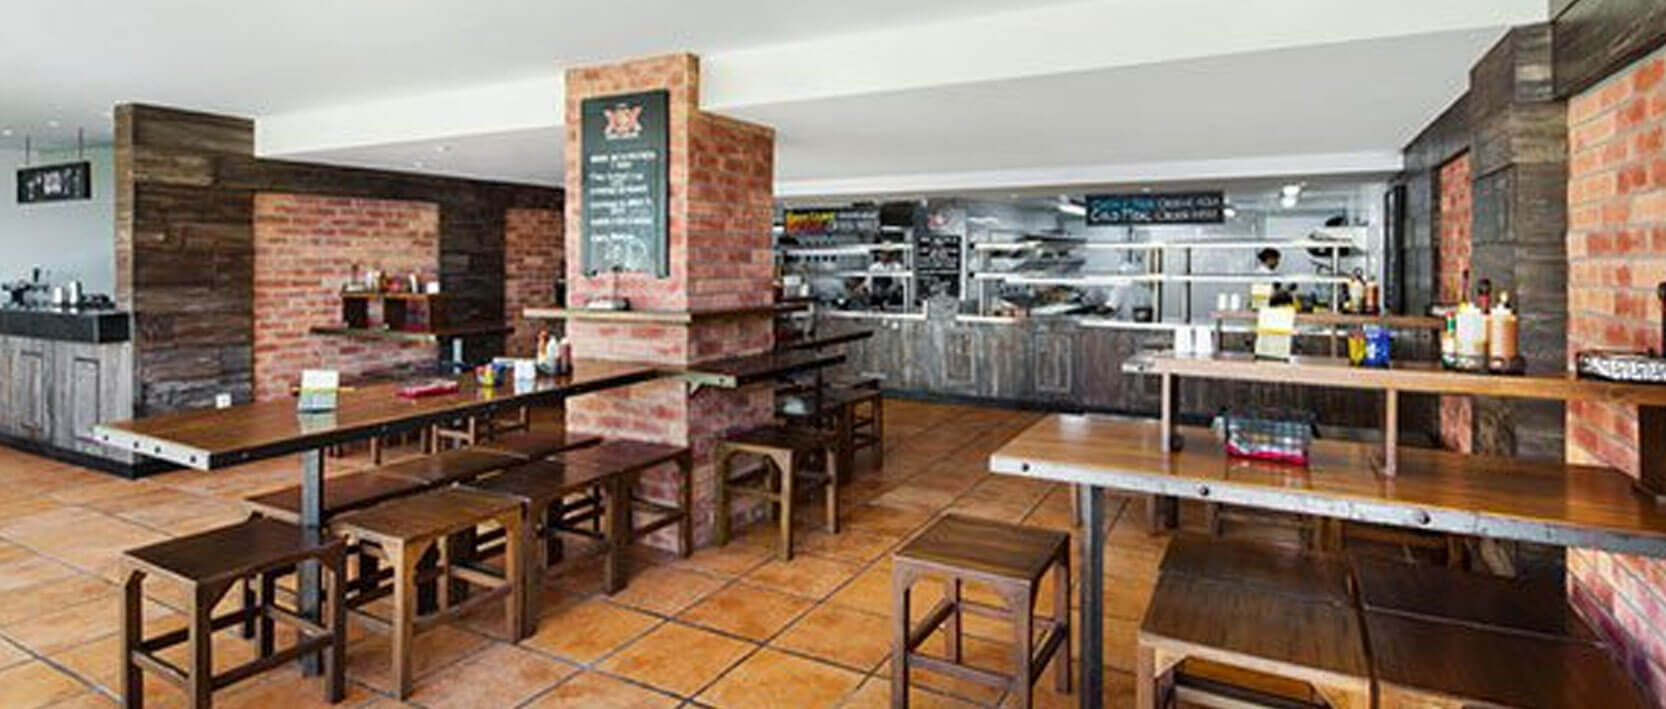 Hyatt Ziva Los Cabos Restaurants and Bars - Coco Loco Snack Bar